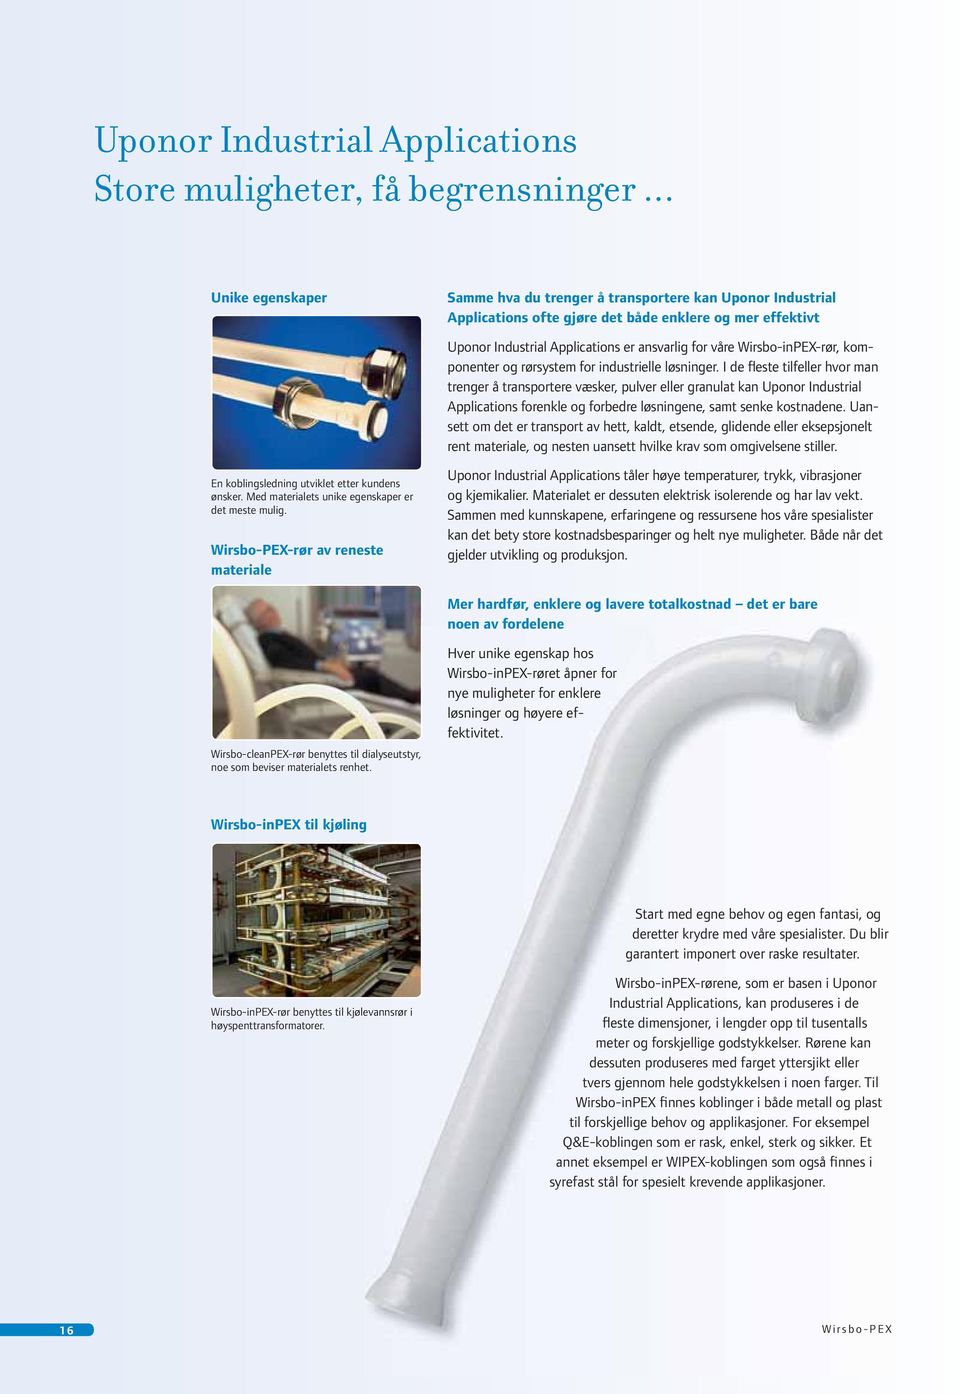 Wirsbo-inPEX-rør, komponenter og rørsystem for industrielle løsninger.